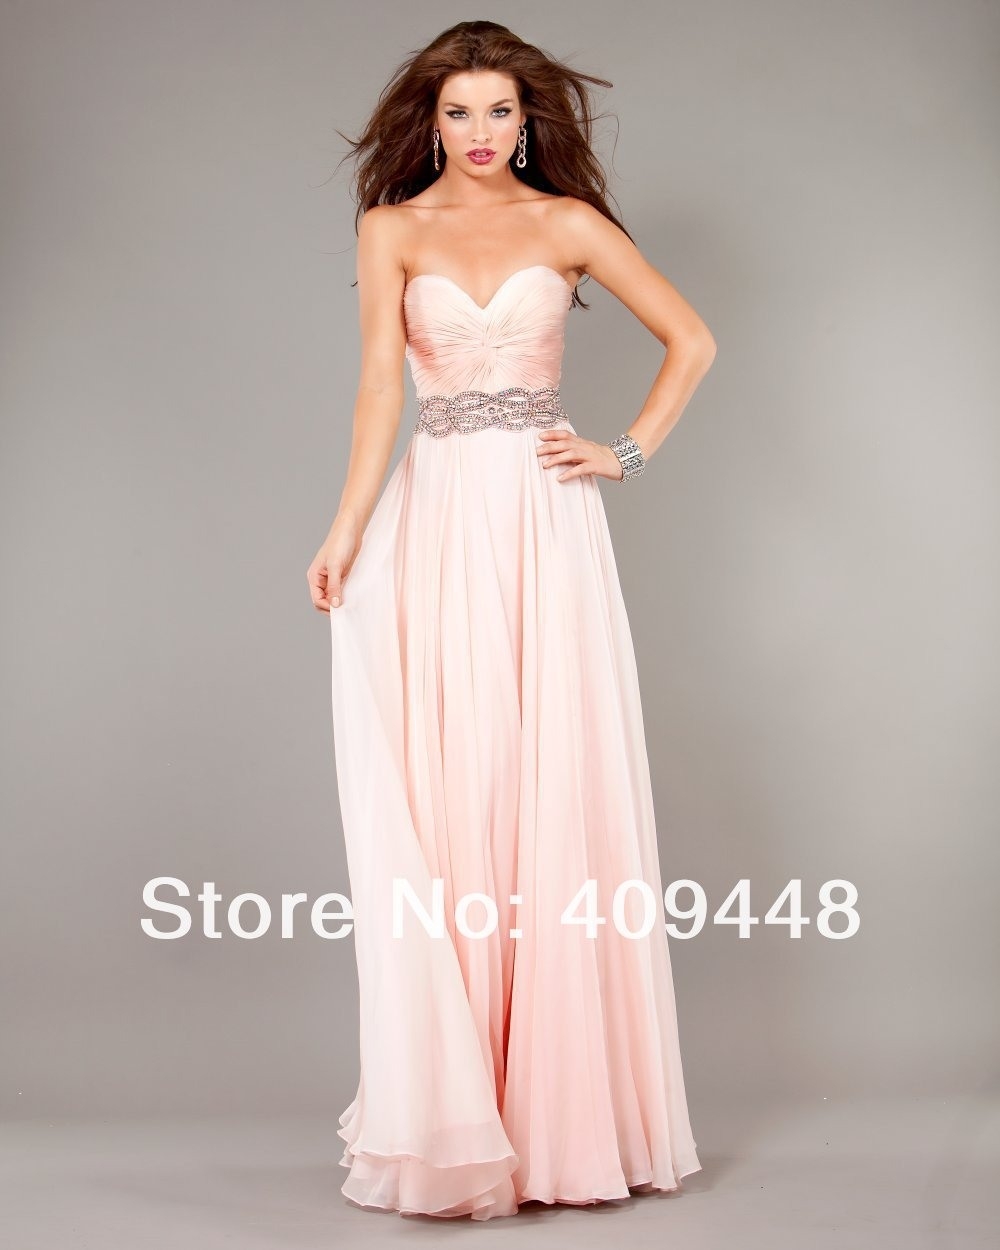 Luxurius Kleid Rose Lang Design10 Fantastisch Kleid Rose Lang Boutique